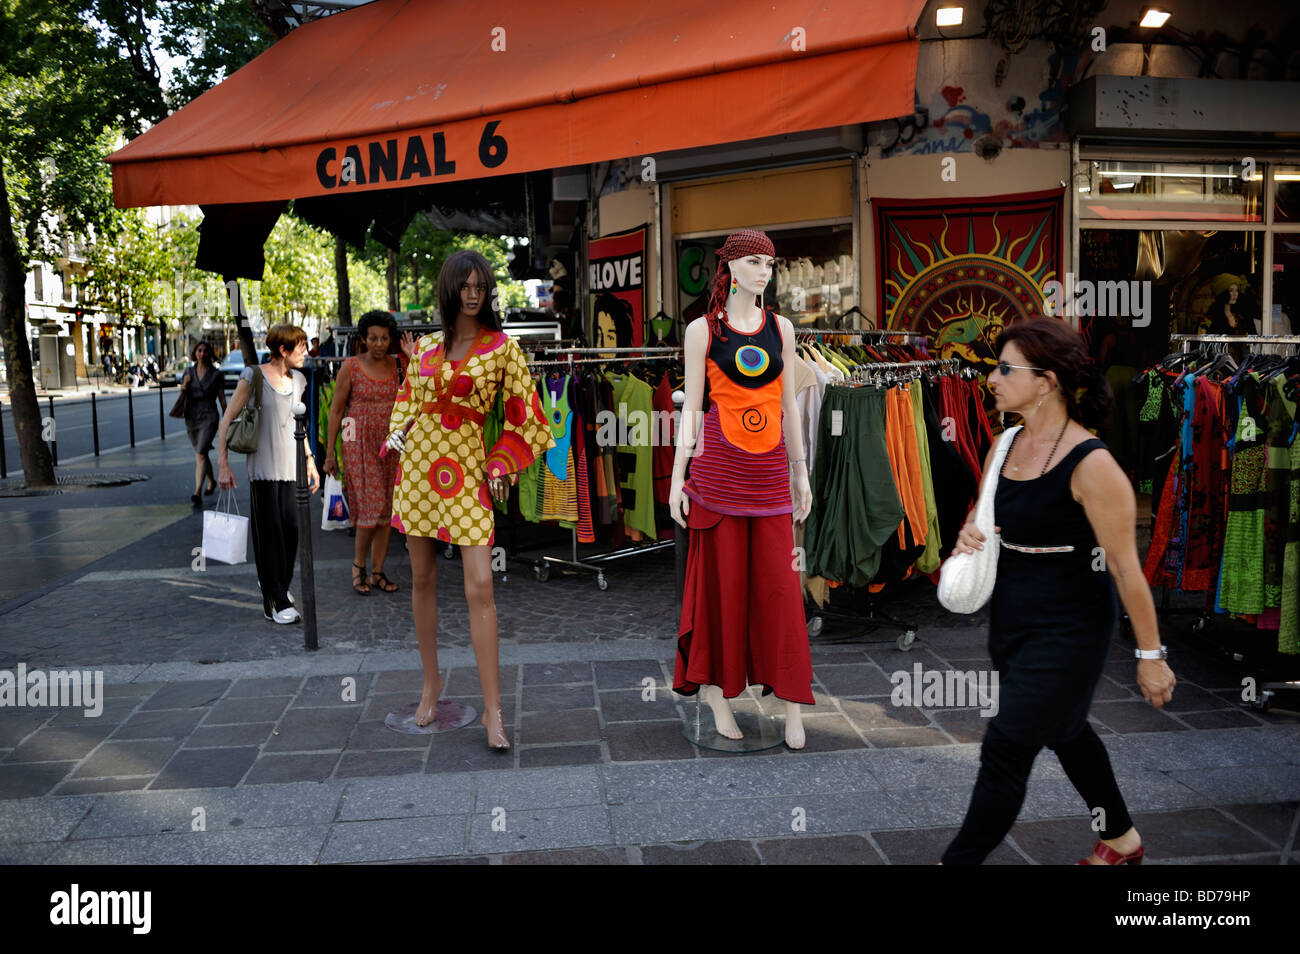 Parigi Francia, Abbigliamento Shopping, Donna passando da 1970 Vintage shop abiti, Abbigliamento Vintage Shop nella 'Les Halles' parigino Street scene persone, Foto Stock